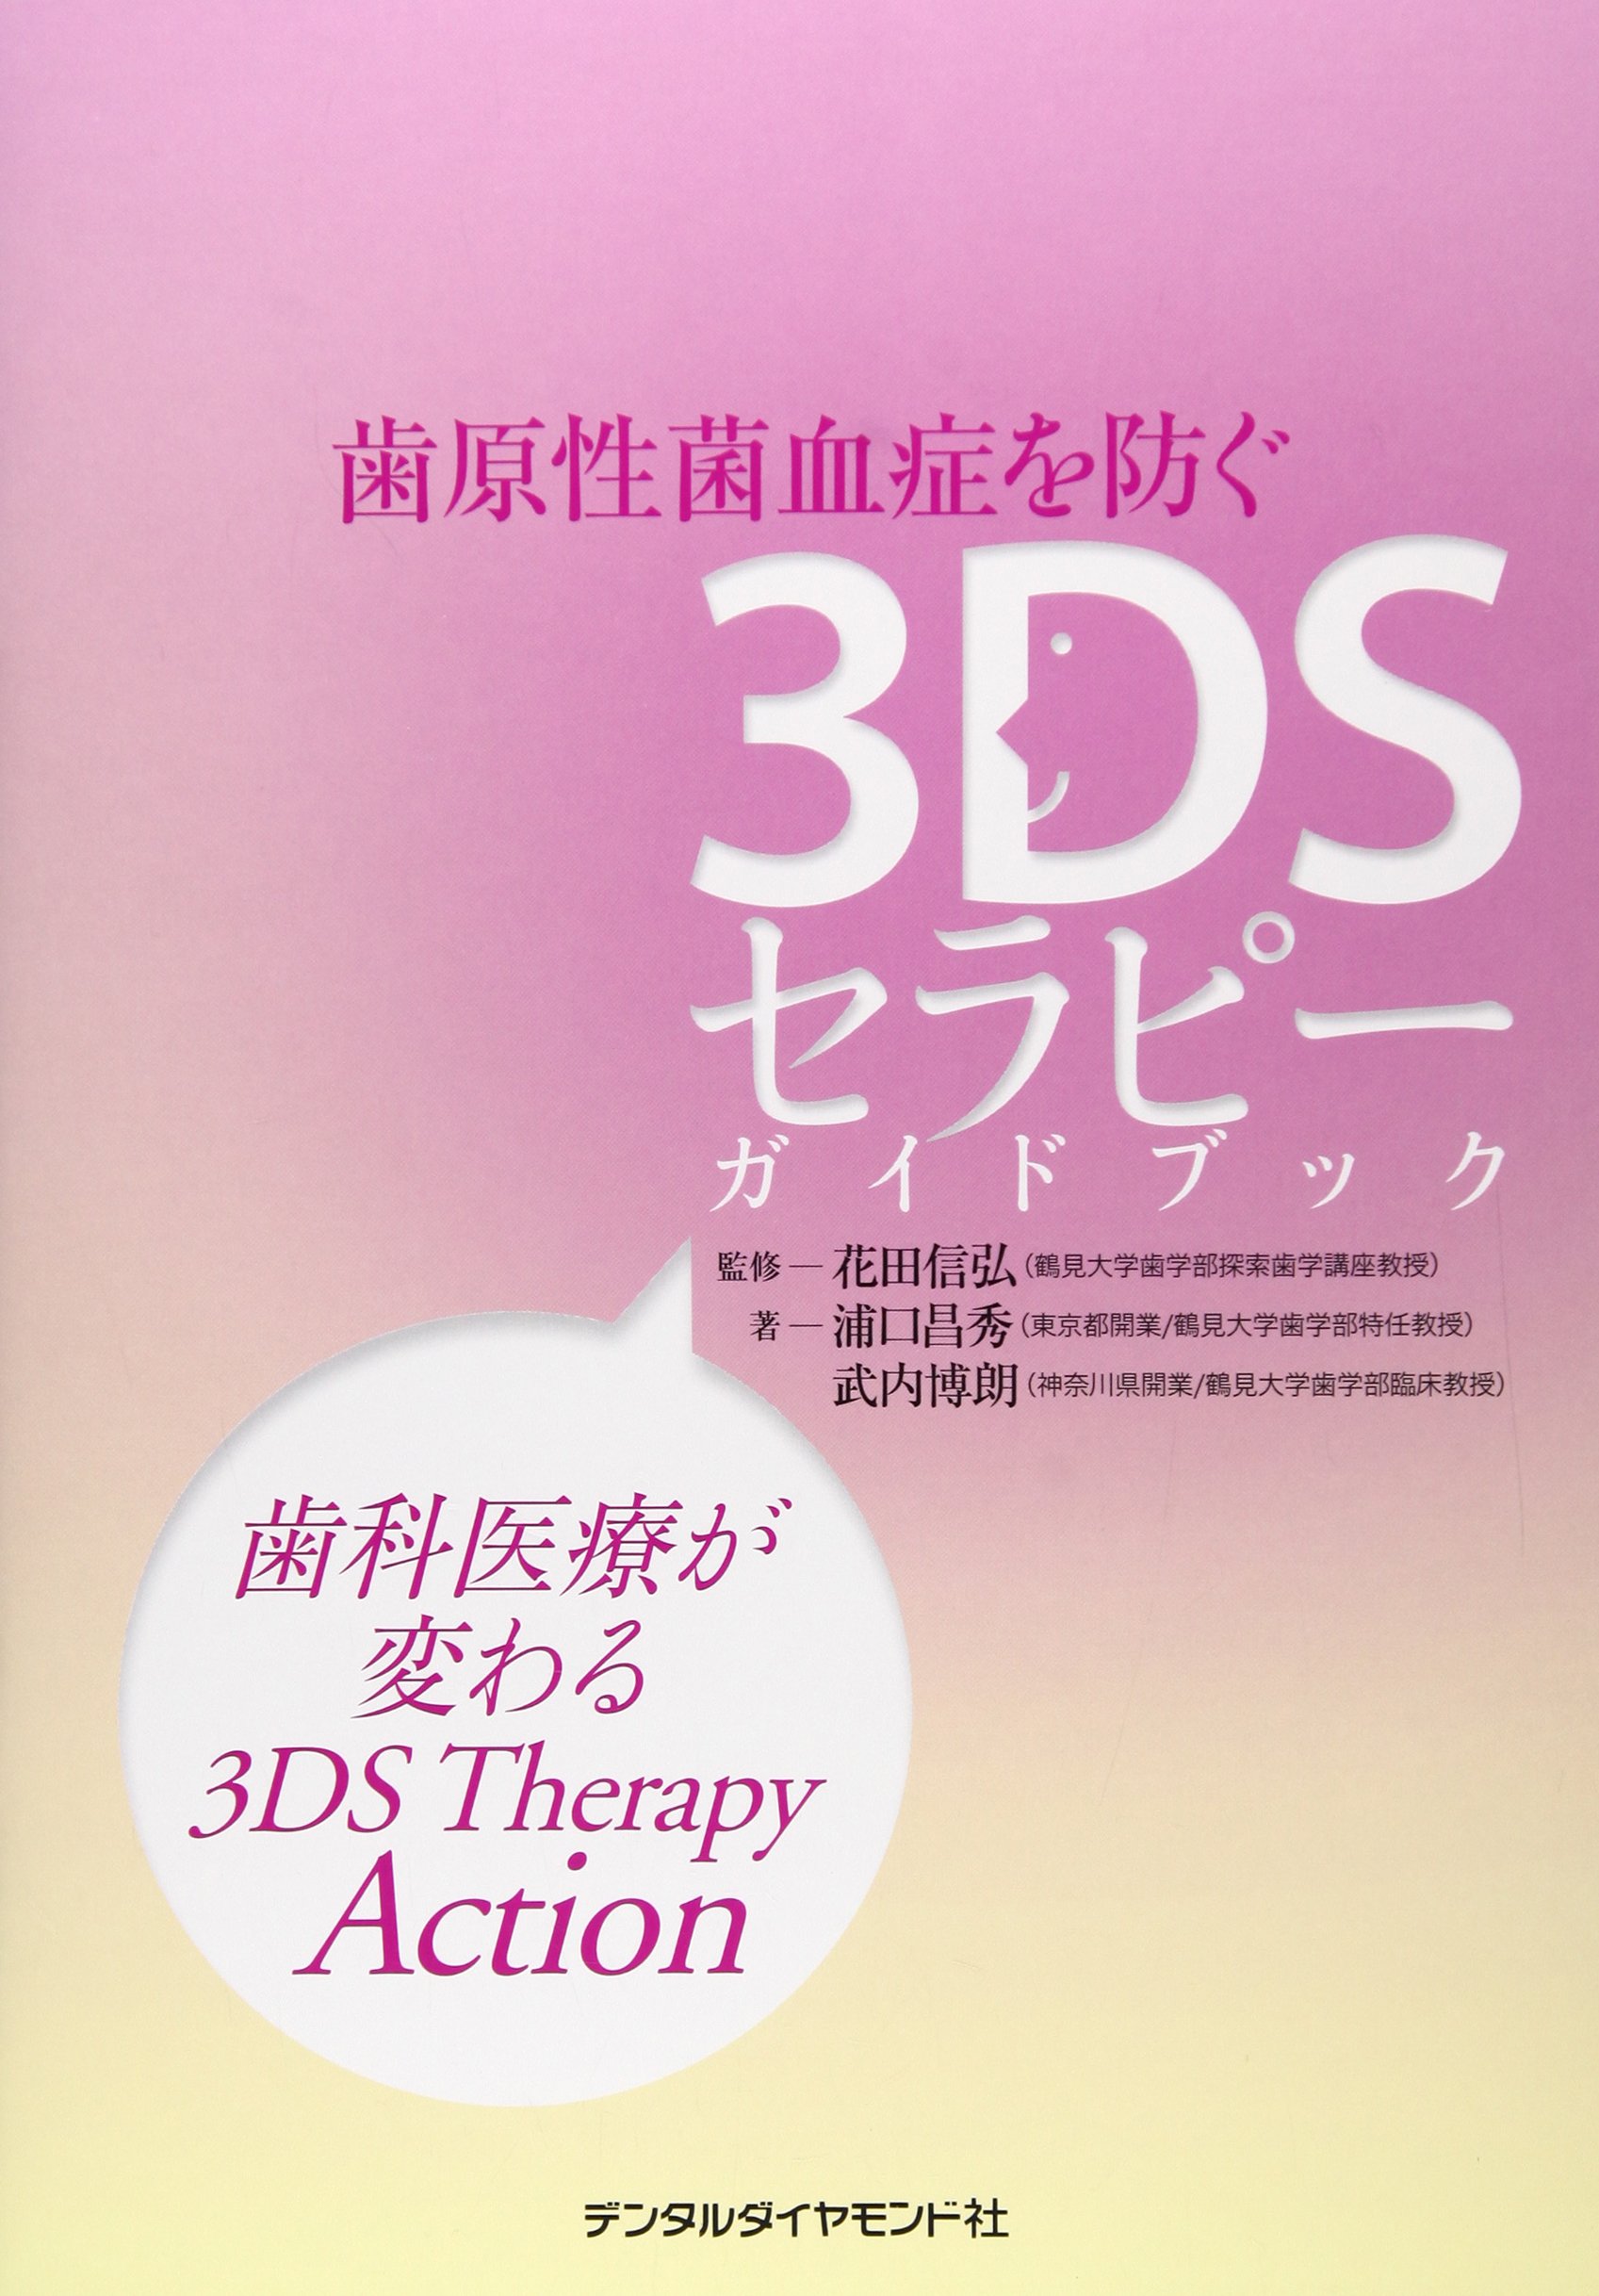 치원성균피증을 막는 3DS세라피(therapy) 가이드 북u2015치과의료가 변하는 3DS Therapy Action